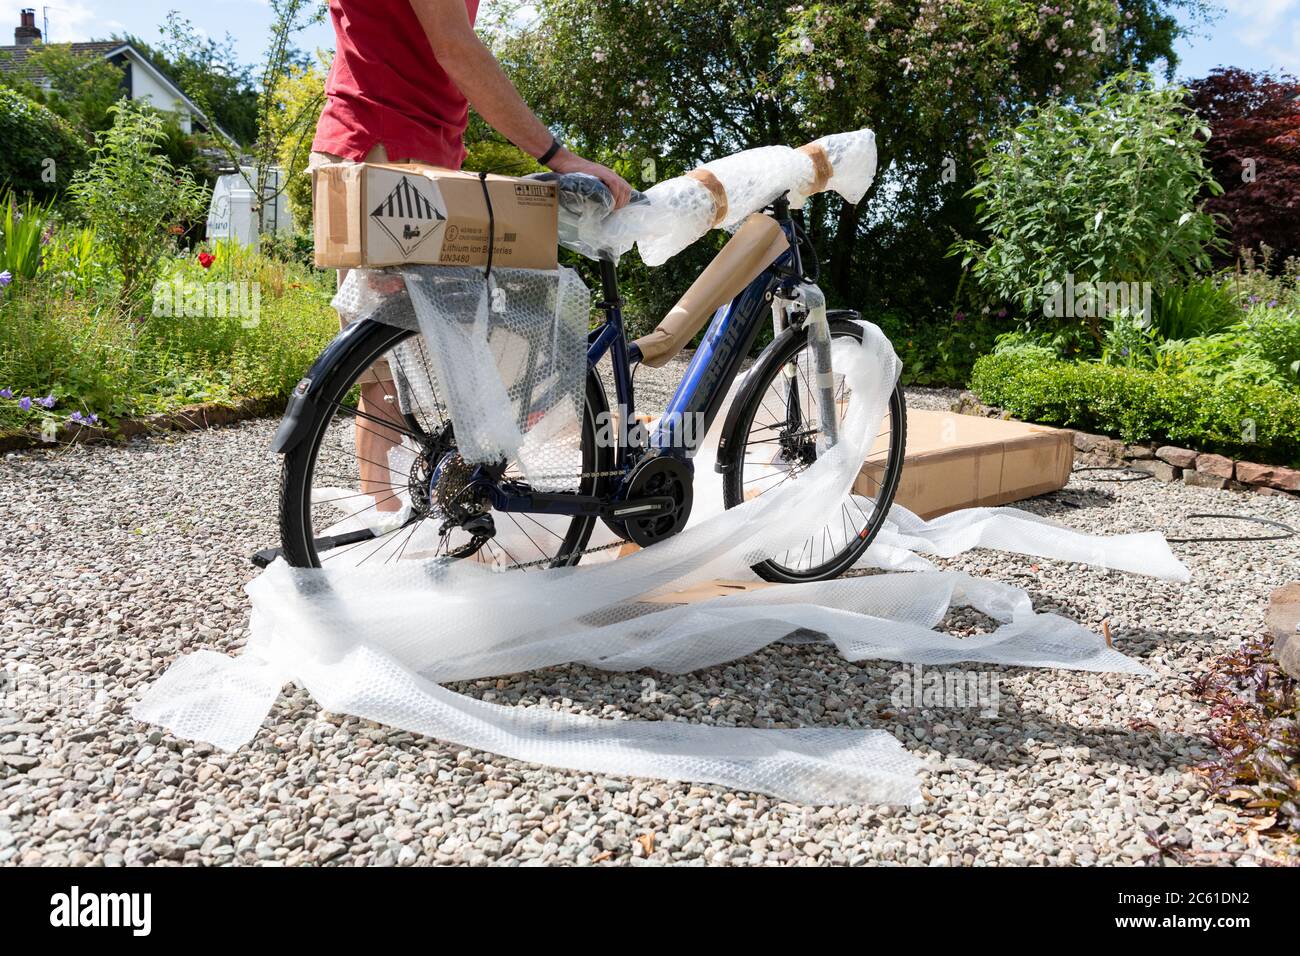 Livraison à domicile de vélo électrique ebike commandé en ligne pendant le verrouillage du coronavirus - vélo sorti de la boîte à vélo et de déballer le film à bulles - Royaume-Uni Banque D'Images